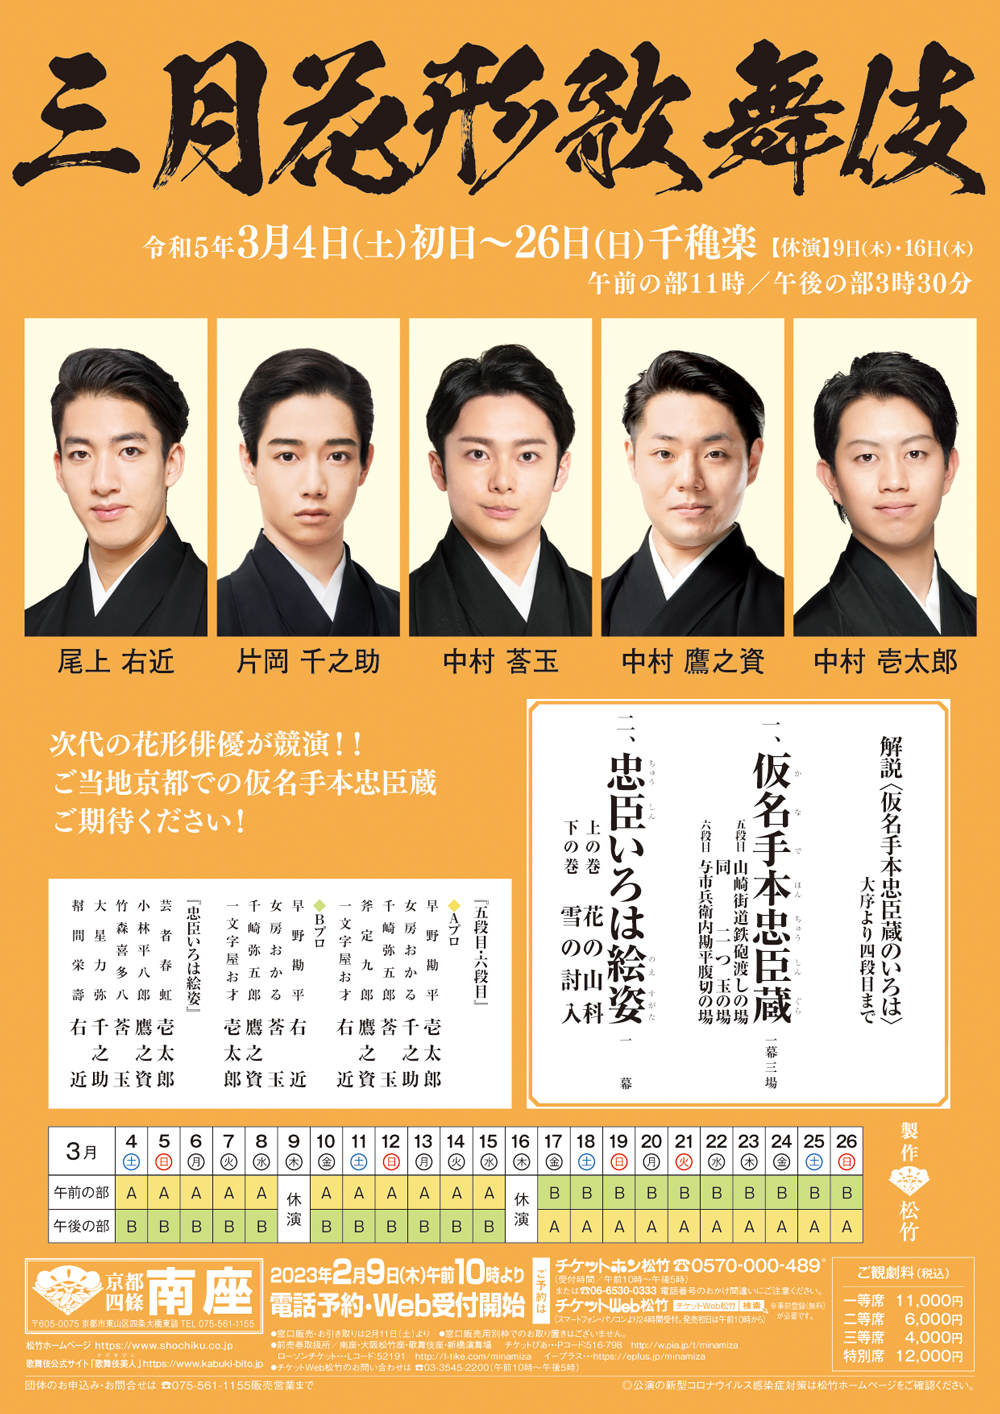 March Program at the Minamiza Theatre